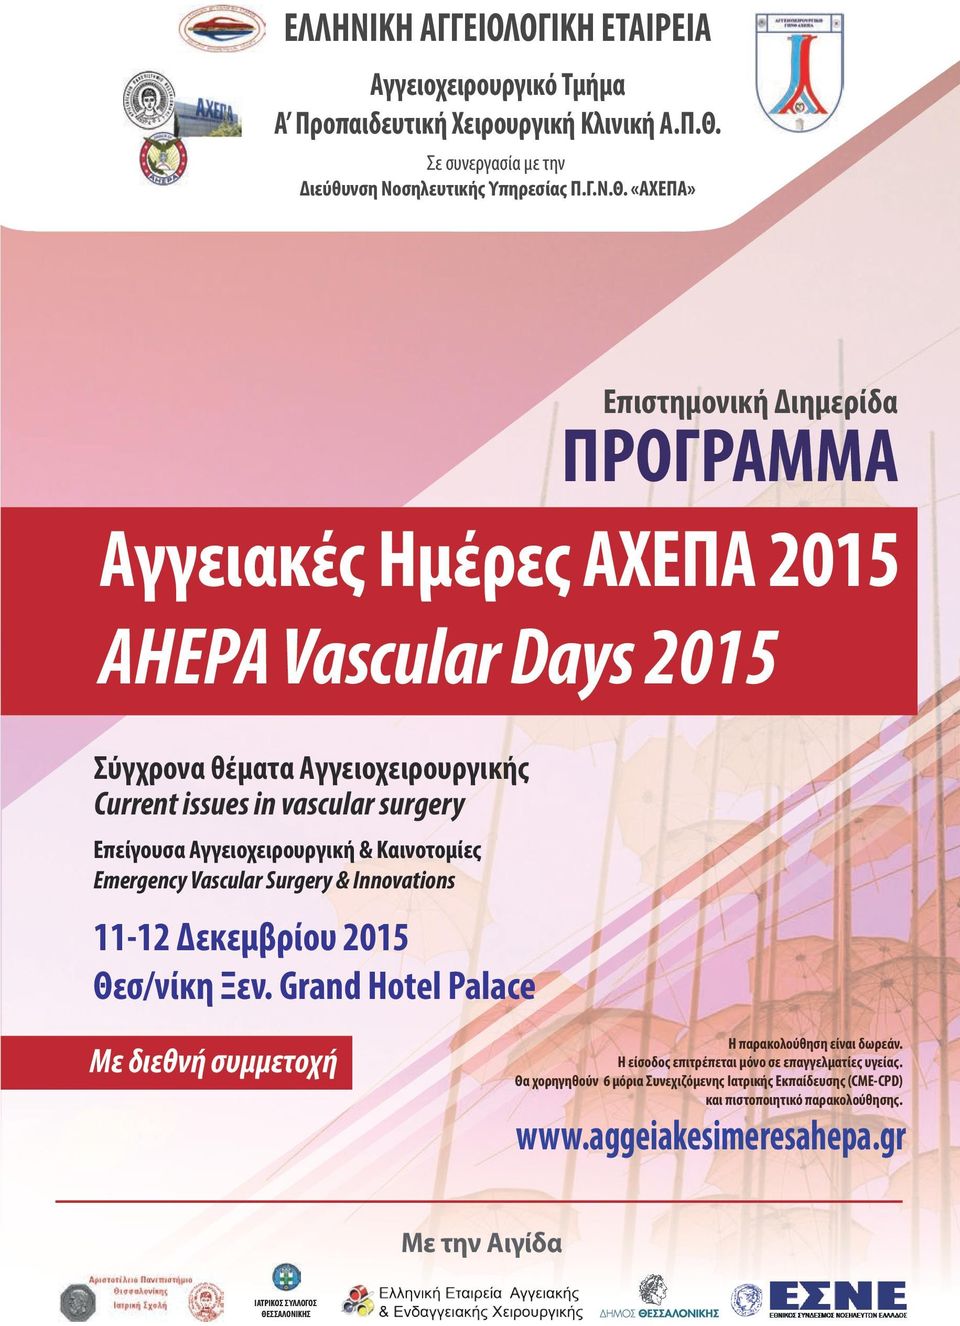 «ΑΧΕΠΑ» Επείγουσα Αγγειοχειρουργική & Καινοτομίες Emergency Vascular Surgery & Innovations Επιστημονική Διημερίδα ΠΡΟΓΡΑΜΜΑ Αγγειακές Ημέρες ΑΧΕΠΑ 2015 AHEPA Vascular Days 2015